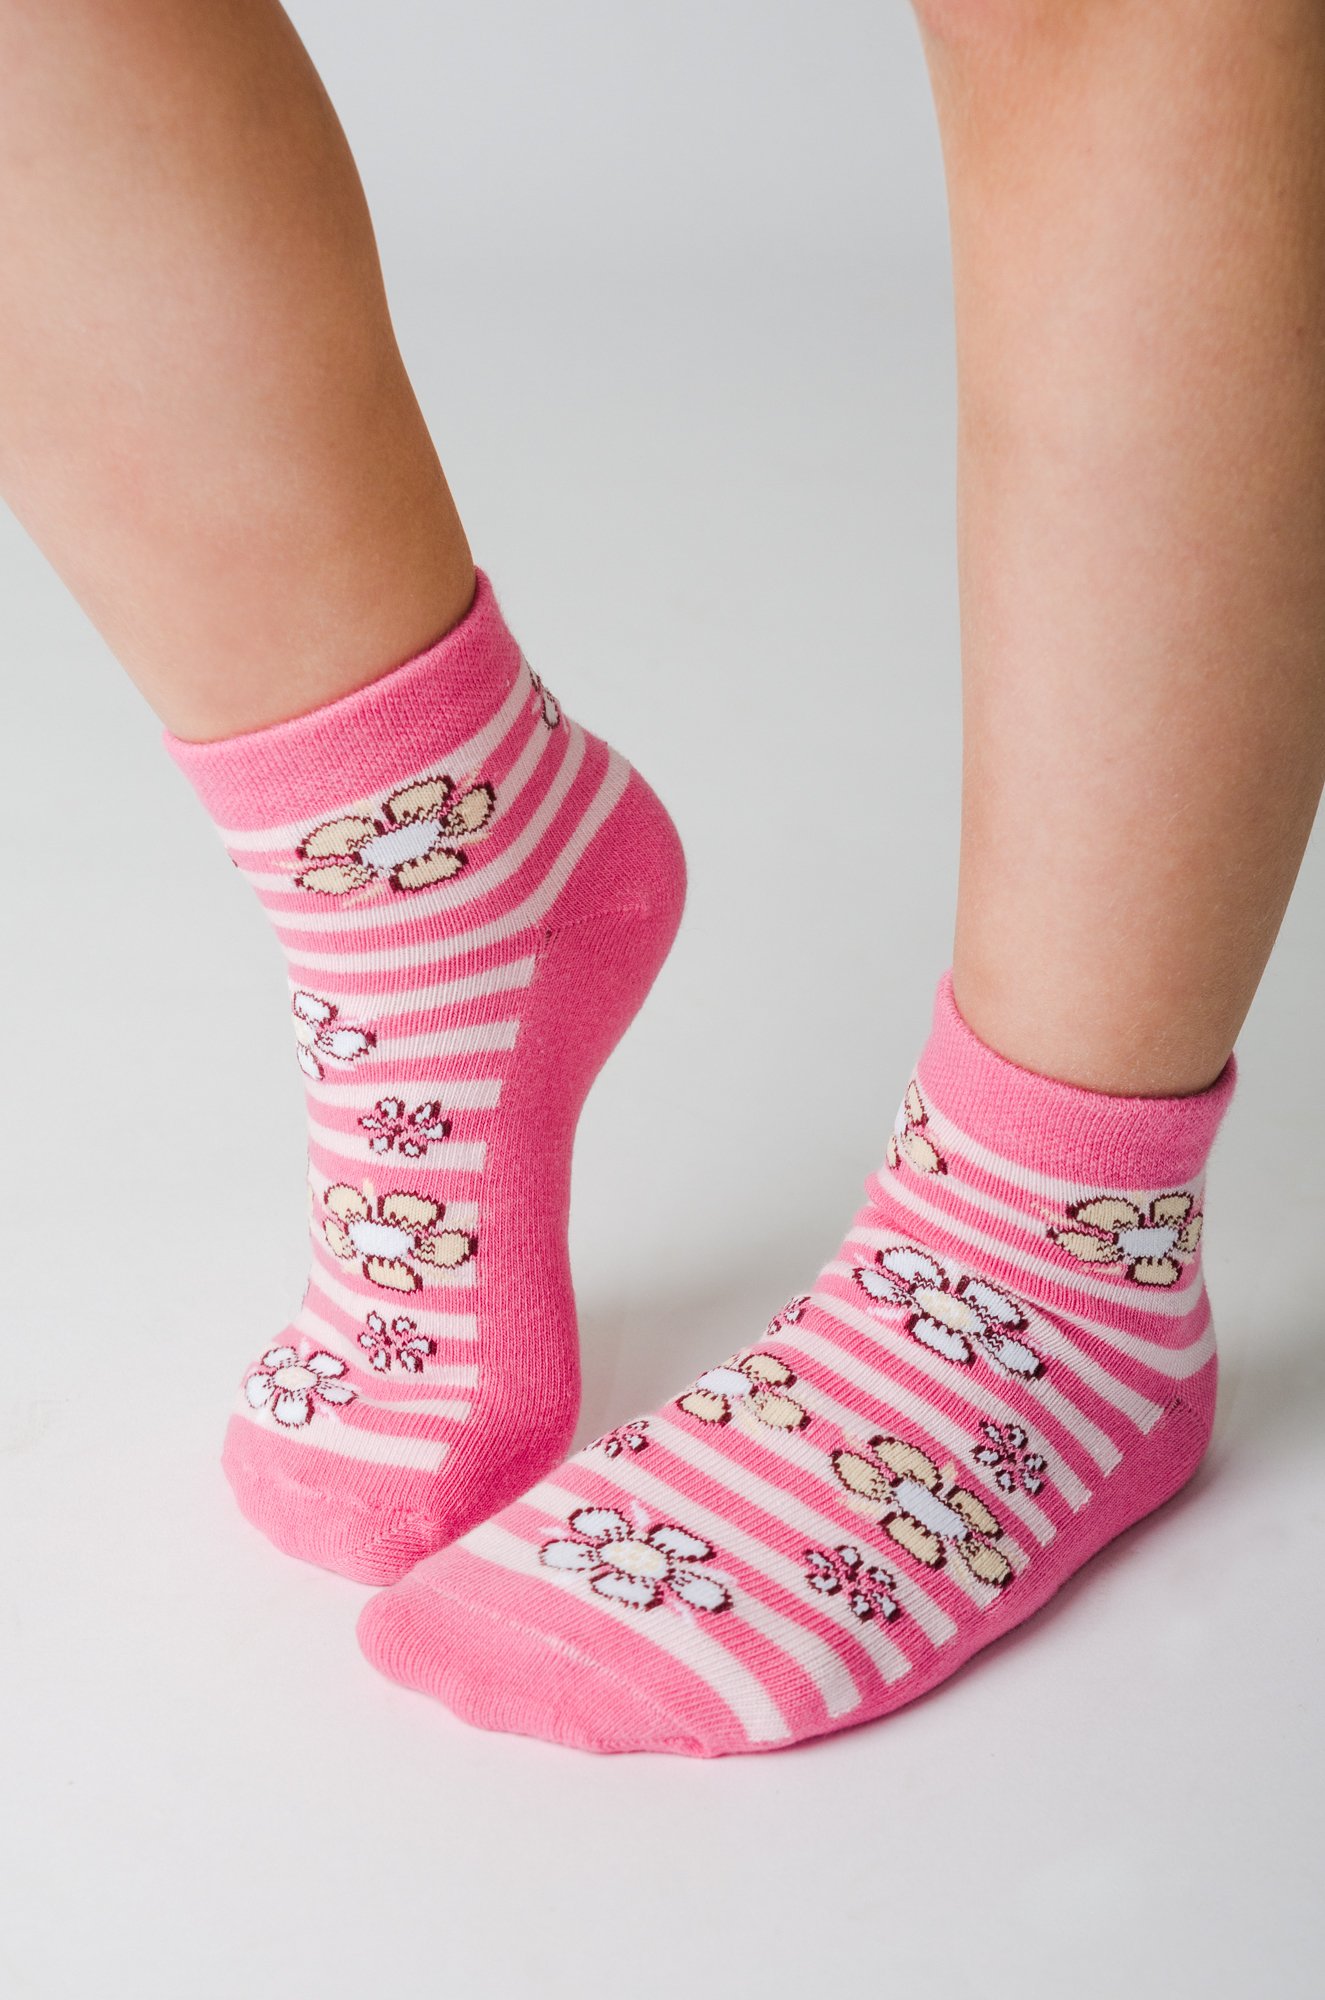 Летние носочки. Носки для девочек. Летние носочки для девочки. Носки для девочек 10 лет. Носки для девочек 5 лет.